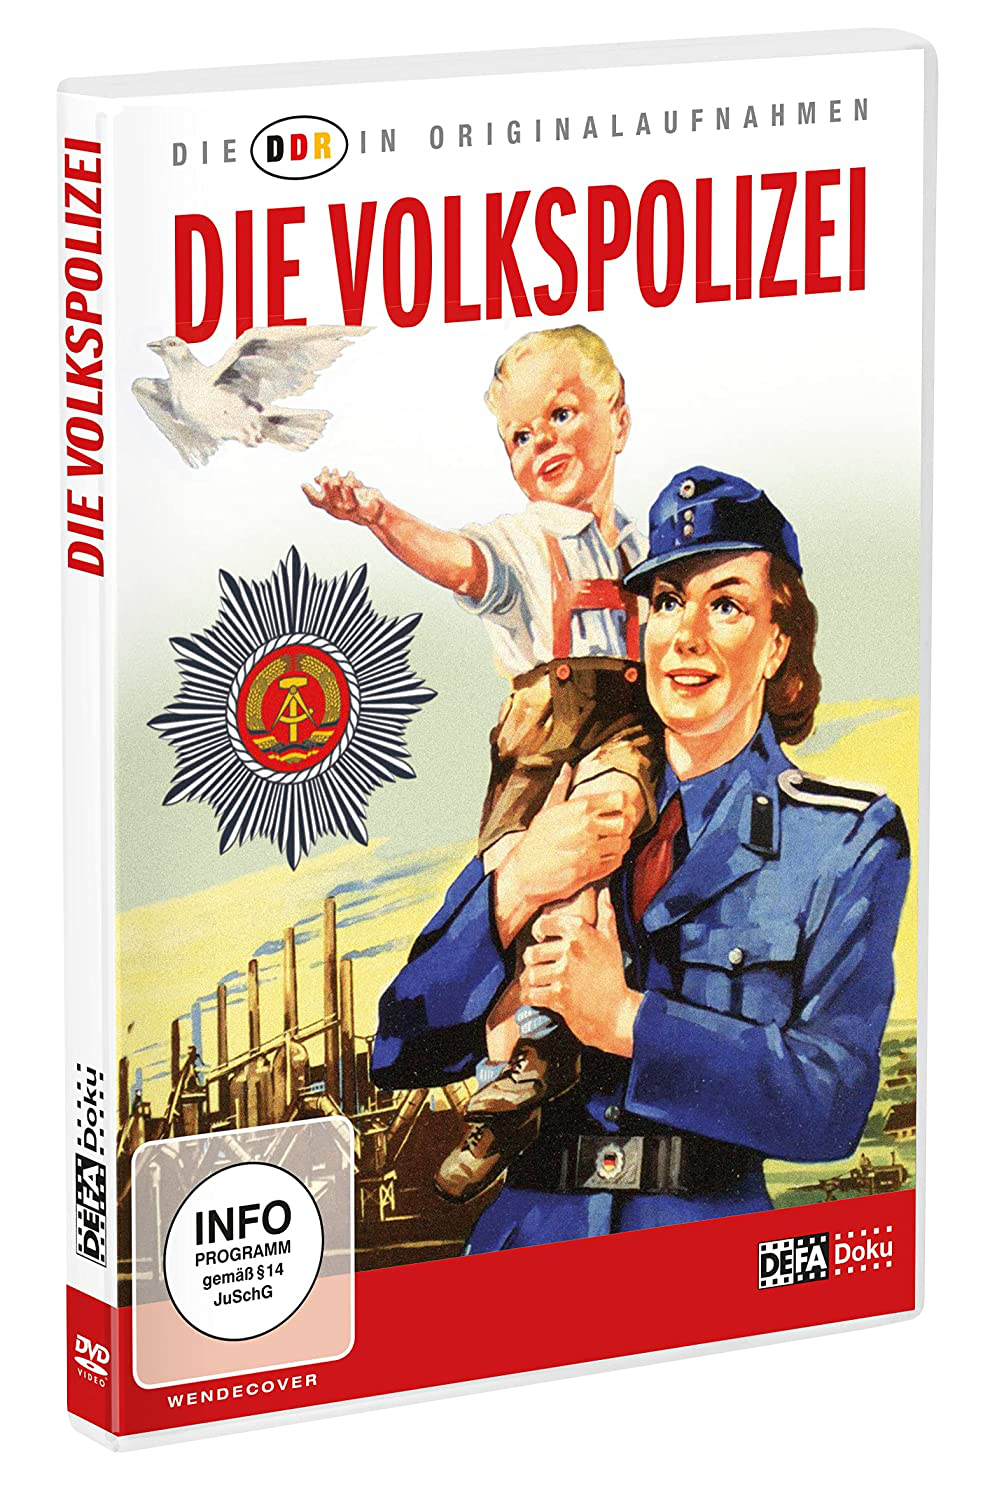 Die DDR in Originalaufnahmen - Die Volkspolizei